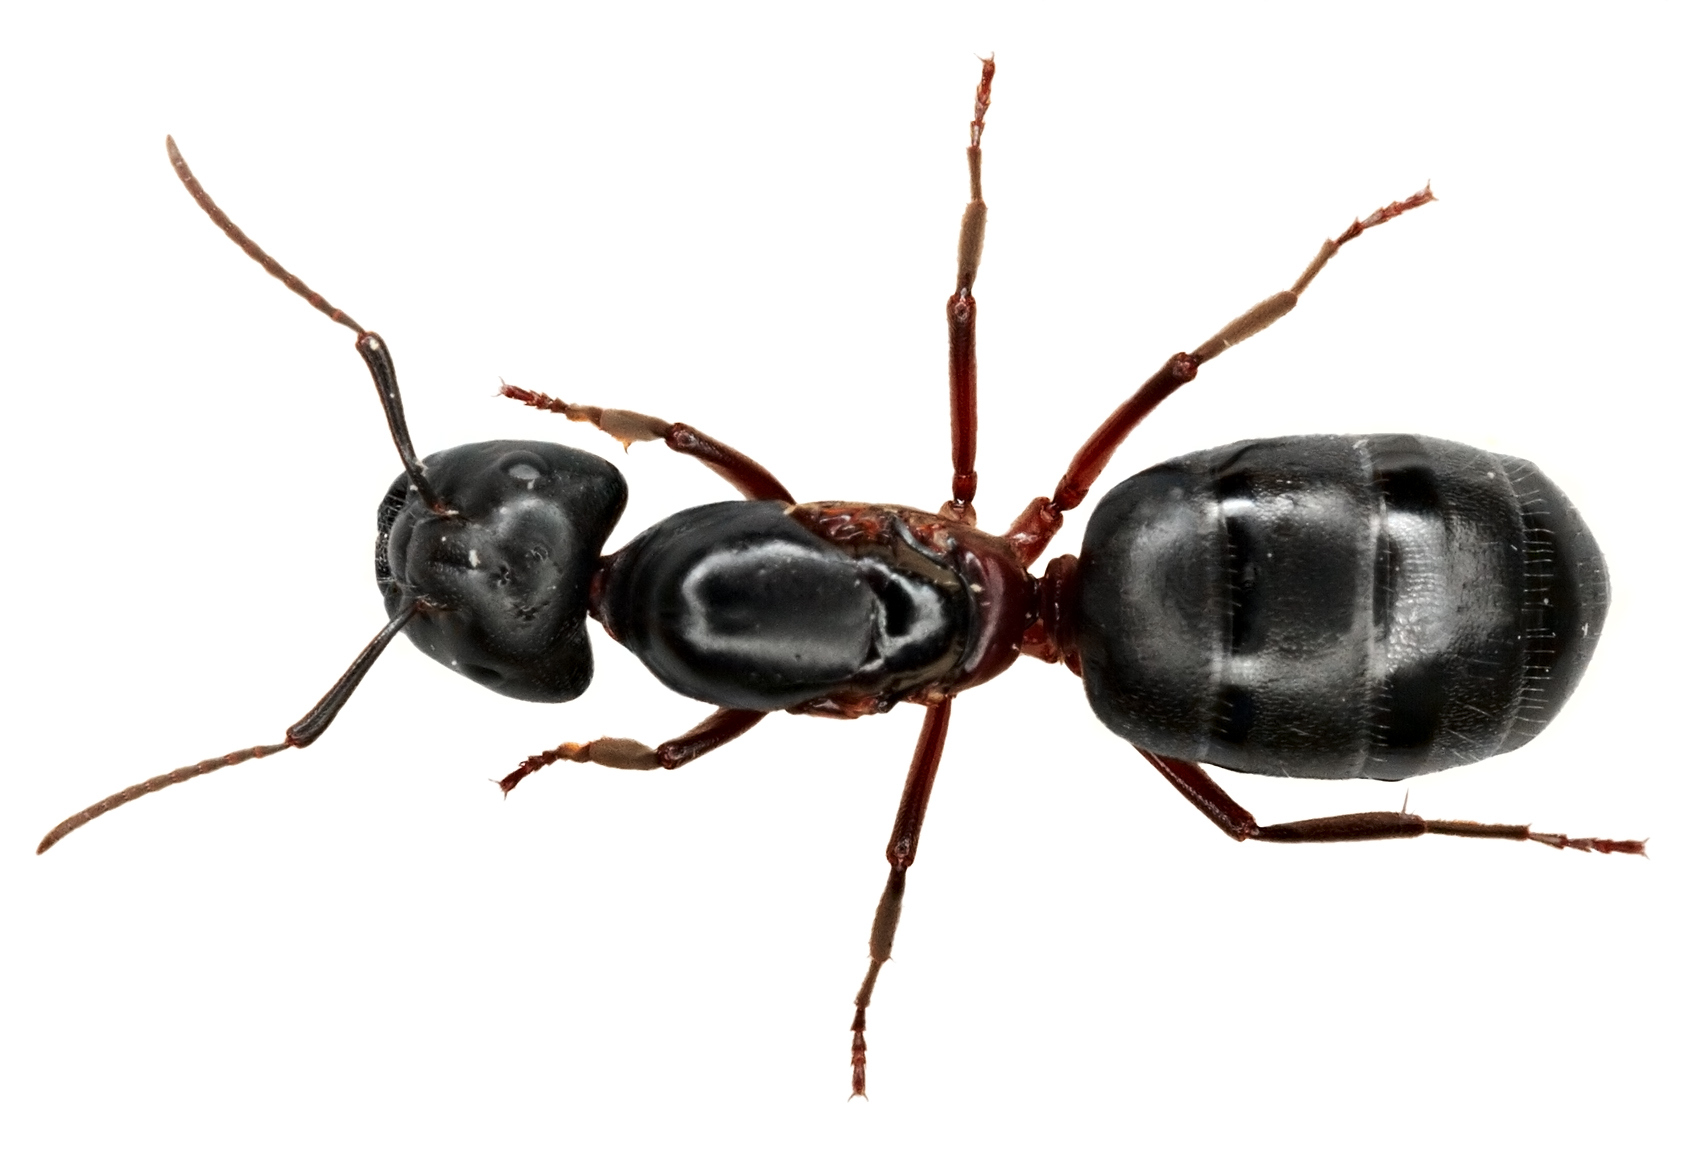 Versuchen Sie, regelmäßig Holzkohlepulver über von Ameisen befallene Stellen zu streuen